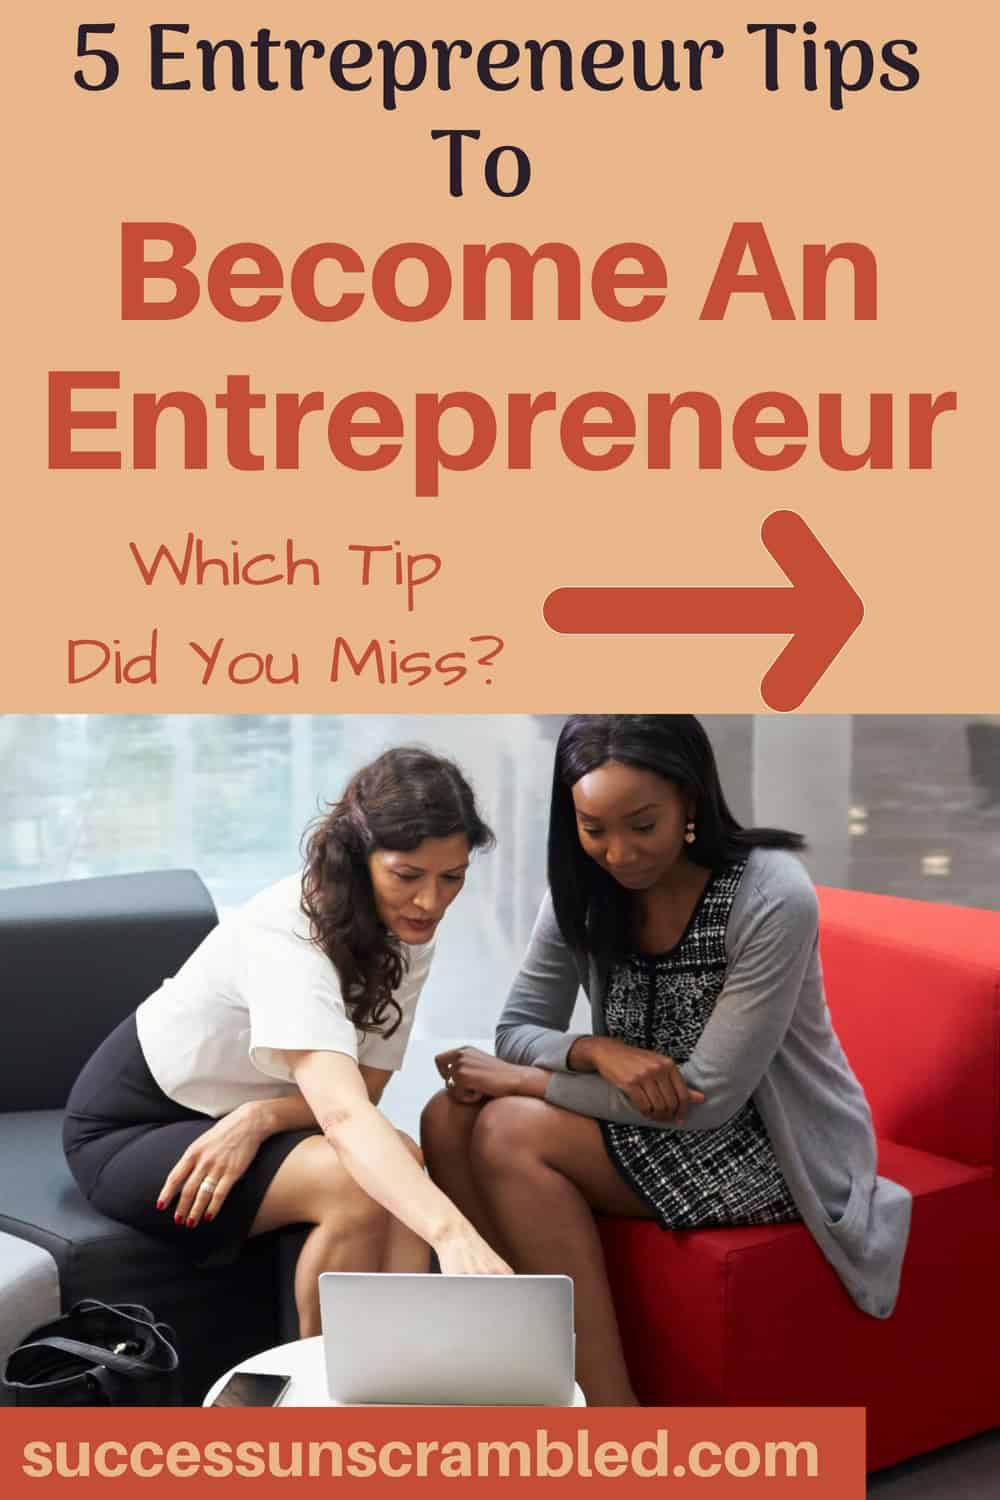 5 Entrepreneur Tips To Become An Entrepreneur